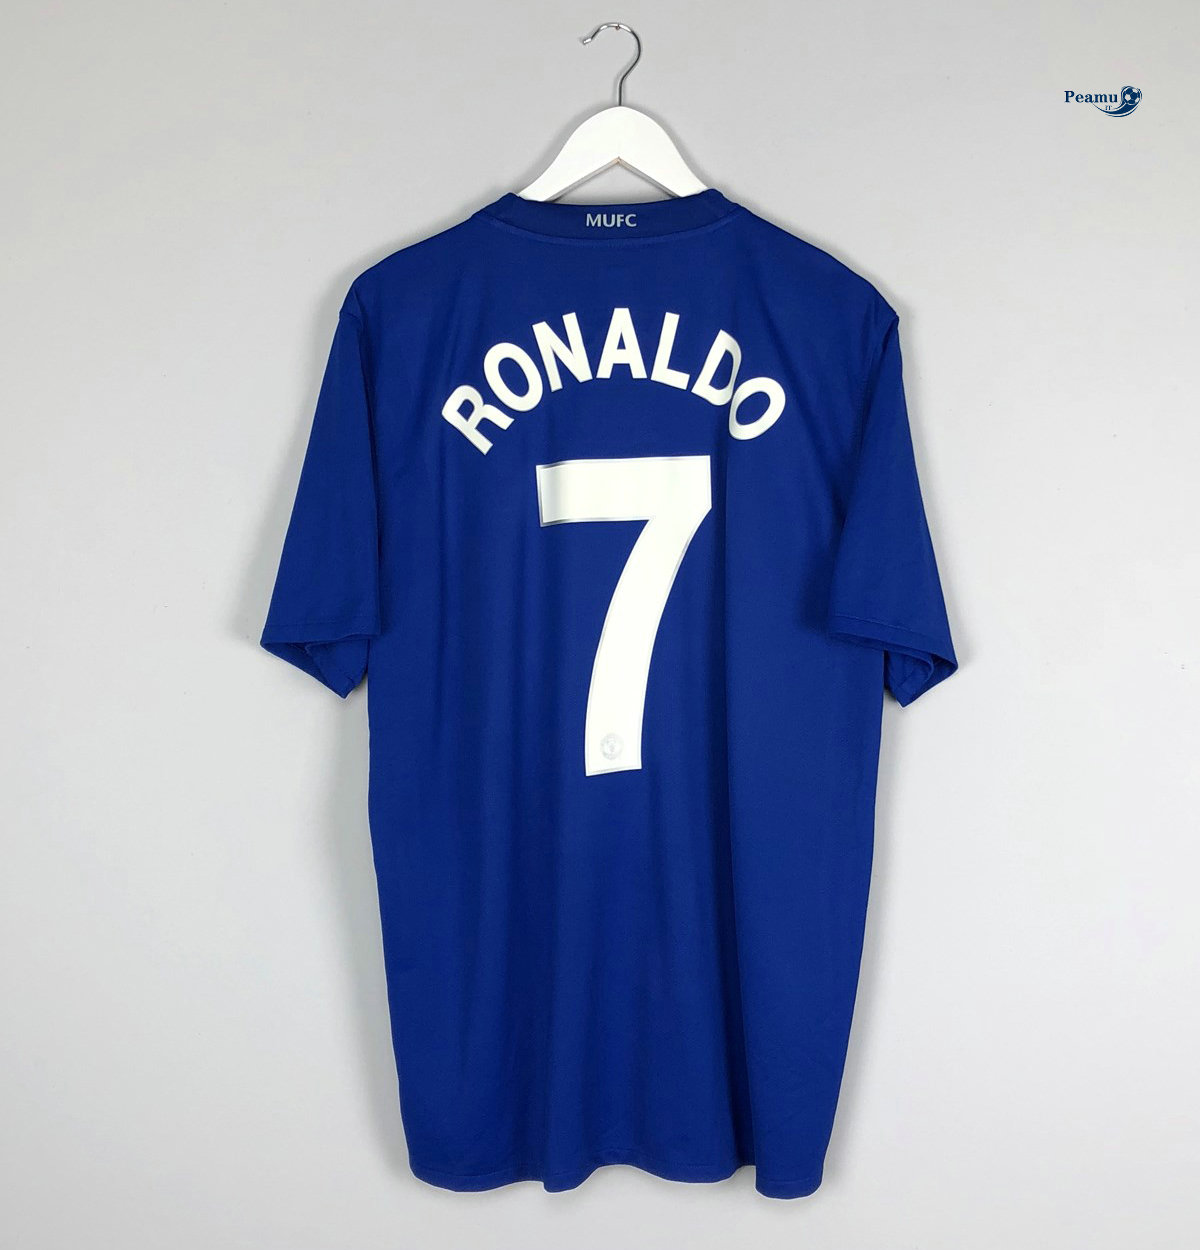 Classico Maglie Manchester United Exterieur Bleu clair (7 Cristiano Ronaldo) 2008-09